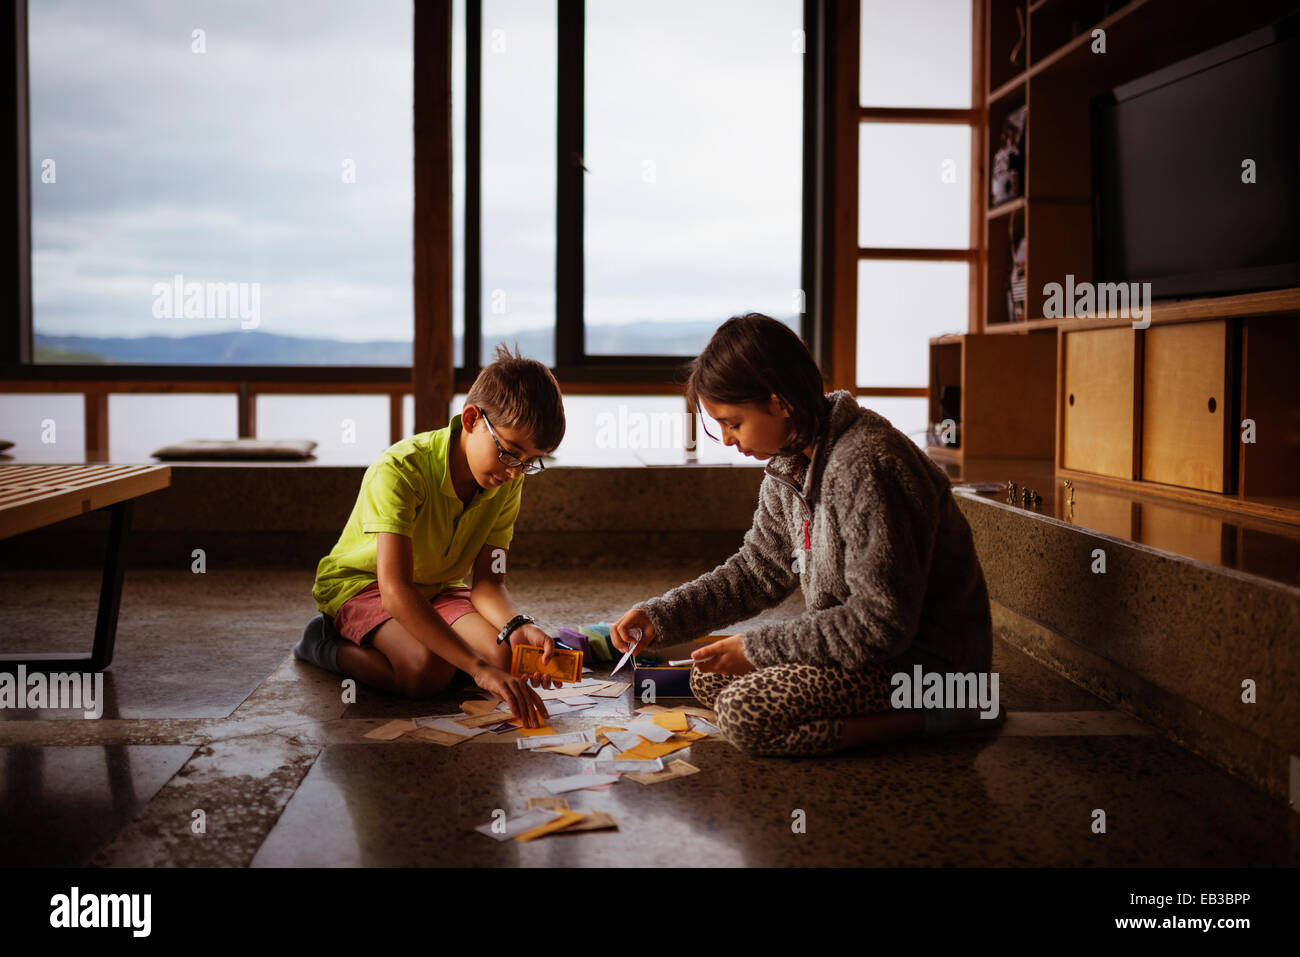 Mischlinge Kinder spielen gemeinsam am Boden des Wohnzimmers Stockfoto